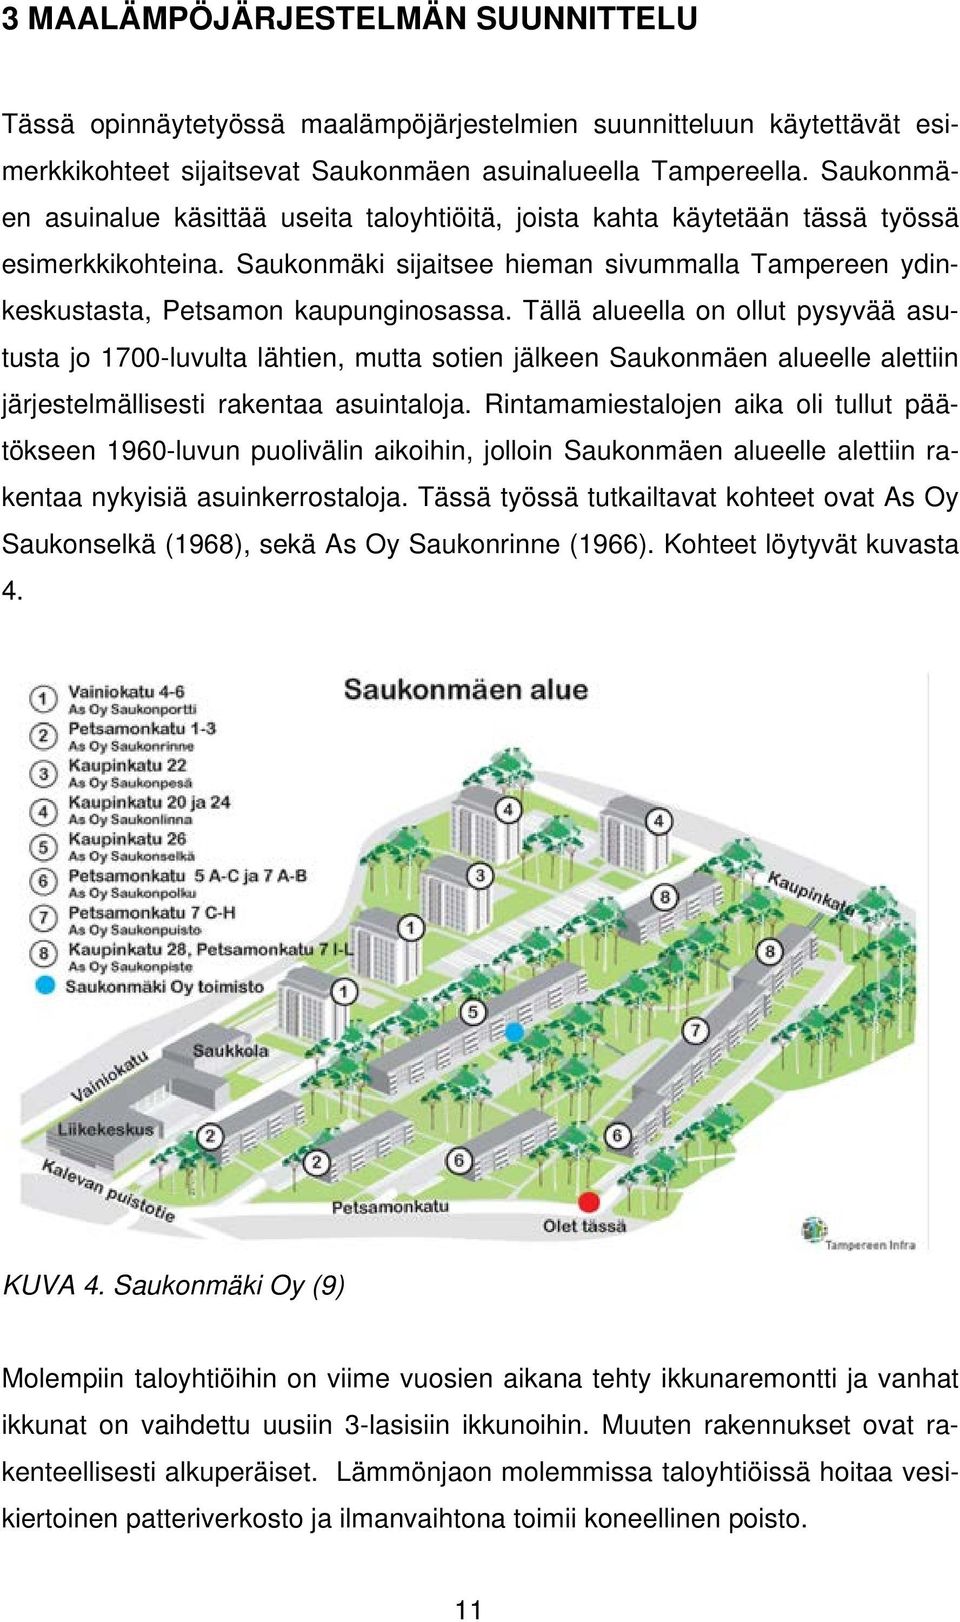 Tällä alueella on ollut pysyvää asutusta jo 1700-luvulta lähtien, mutta sotien jälkeen Saukonmäen alueelle alettiin järjestelmällisesti rakentaa asuintaloja.